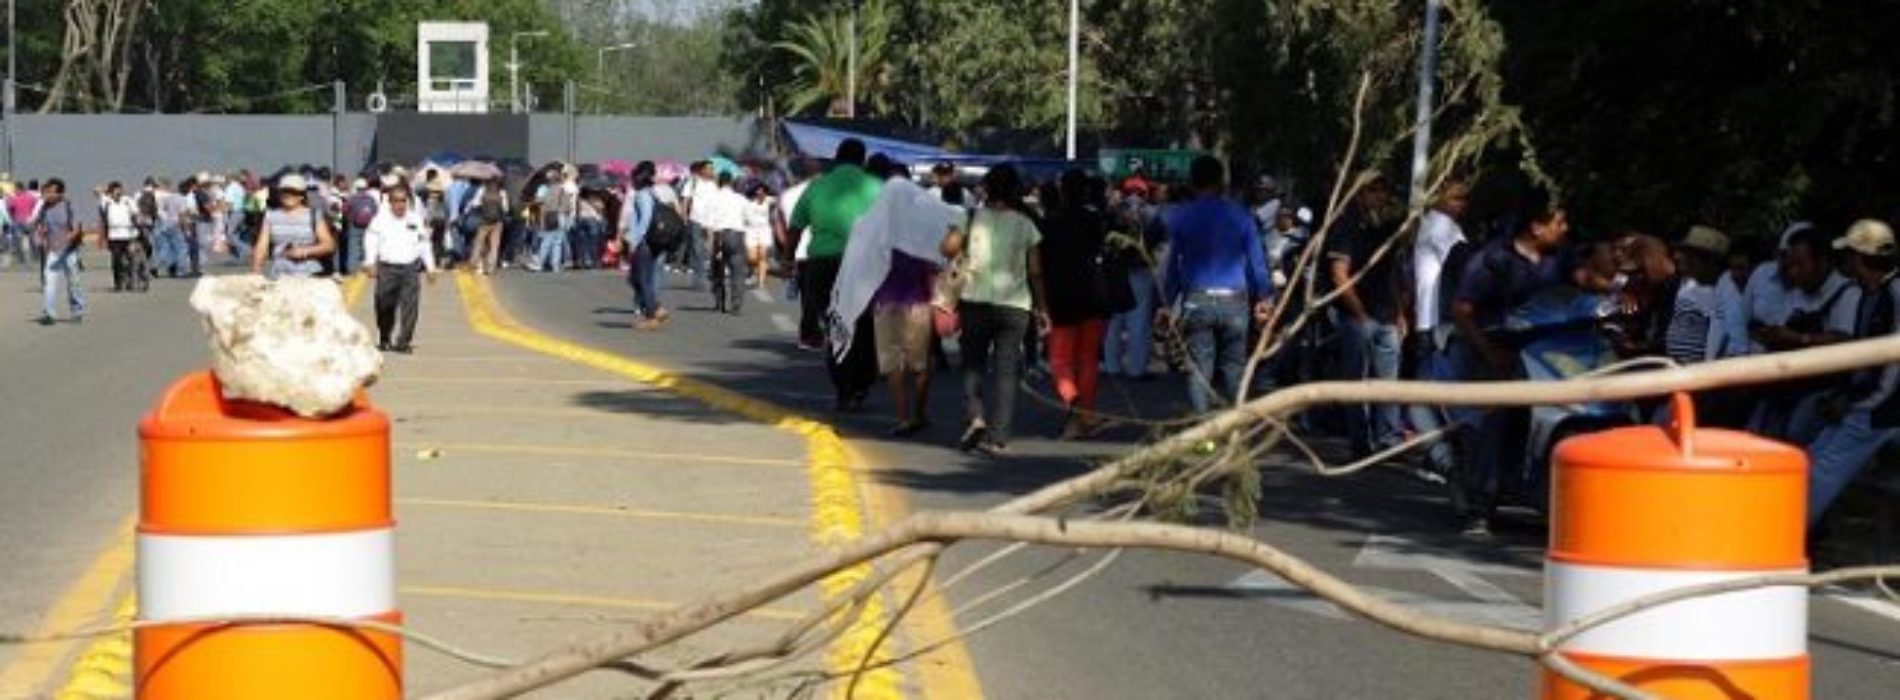 Por bloqueos de la Sección 22 decae economía de
Oaxaca